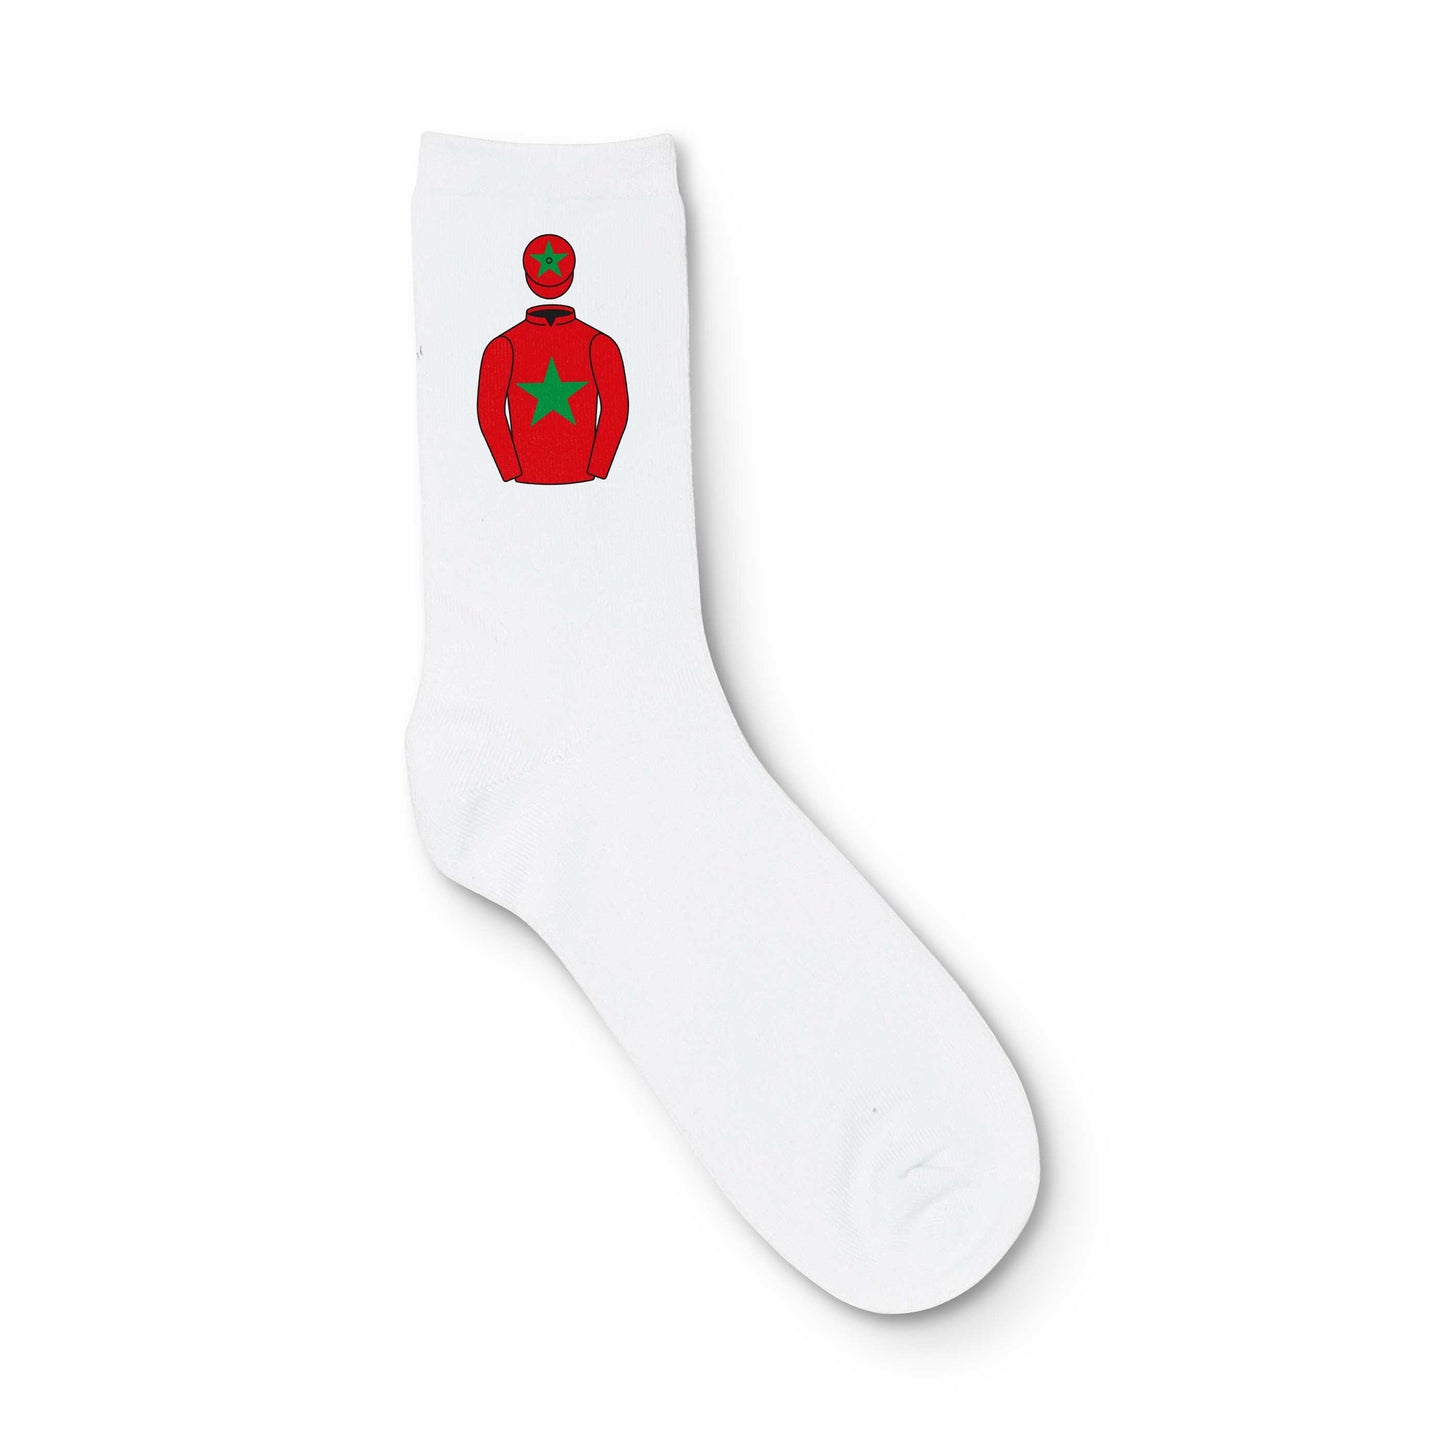 A Selway And P Wavish Printed Sock - Printed Sock - Hacked Up